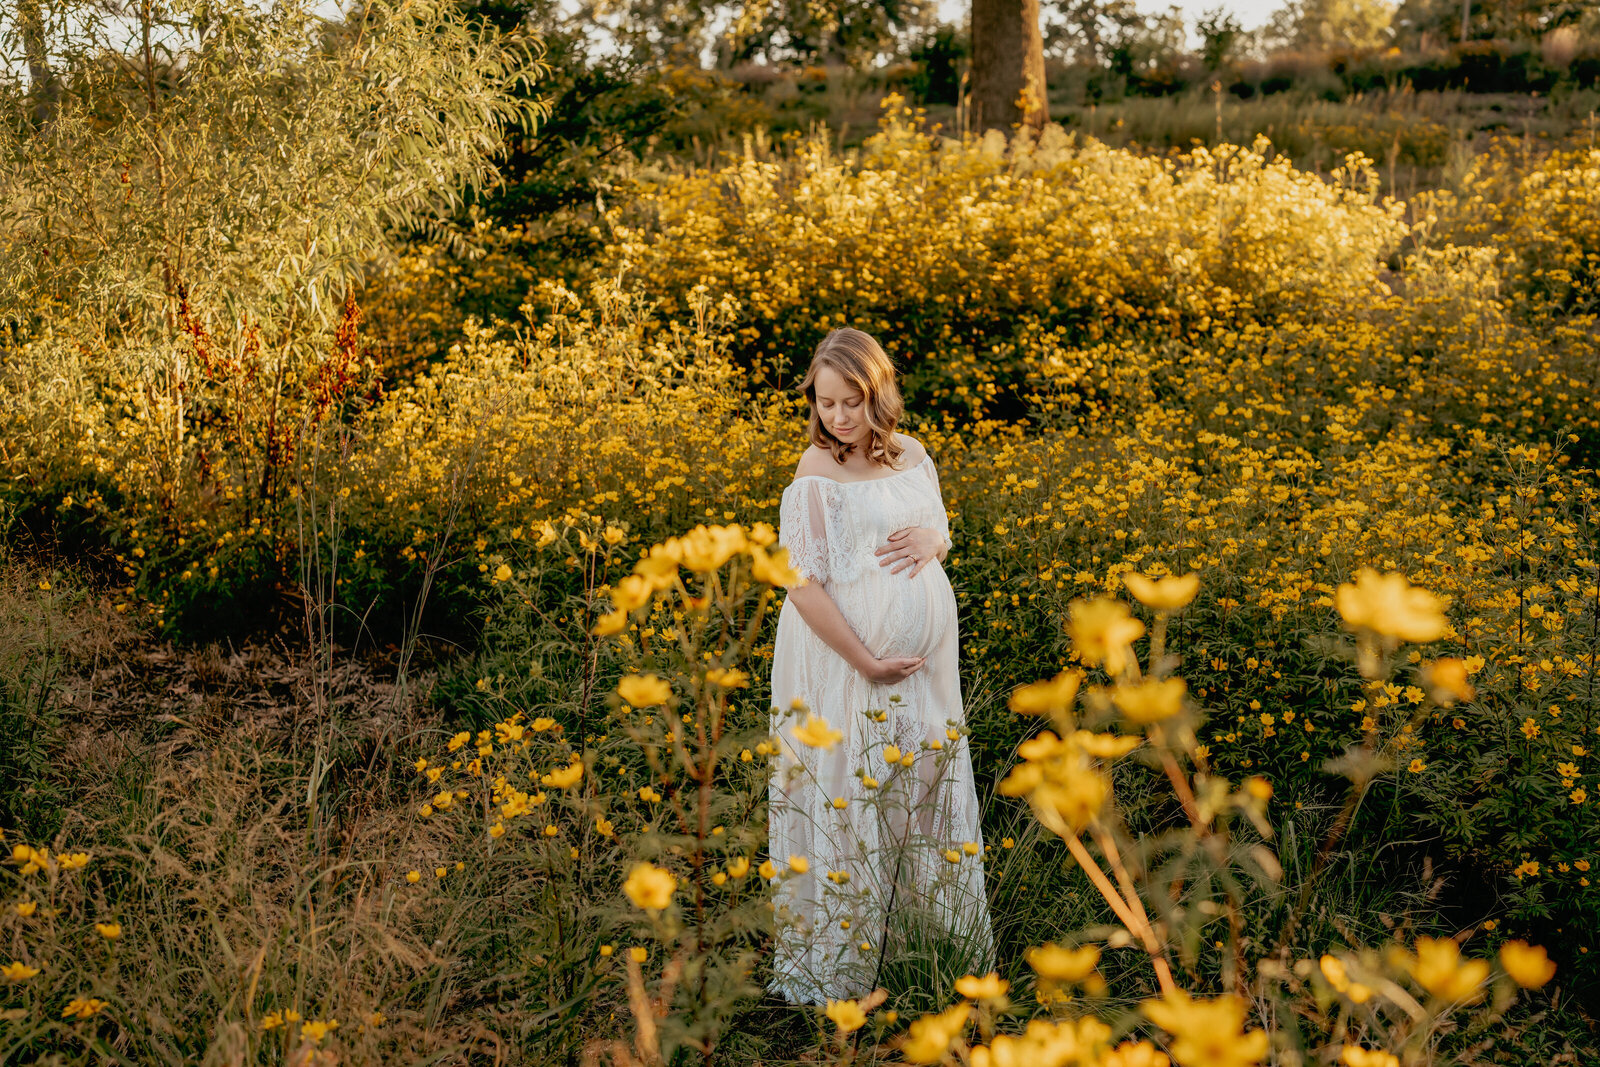 woan standing in yellow flowers field